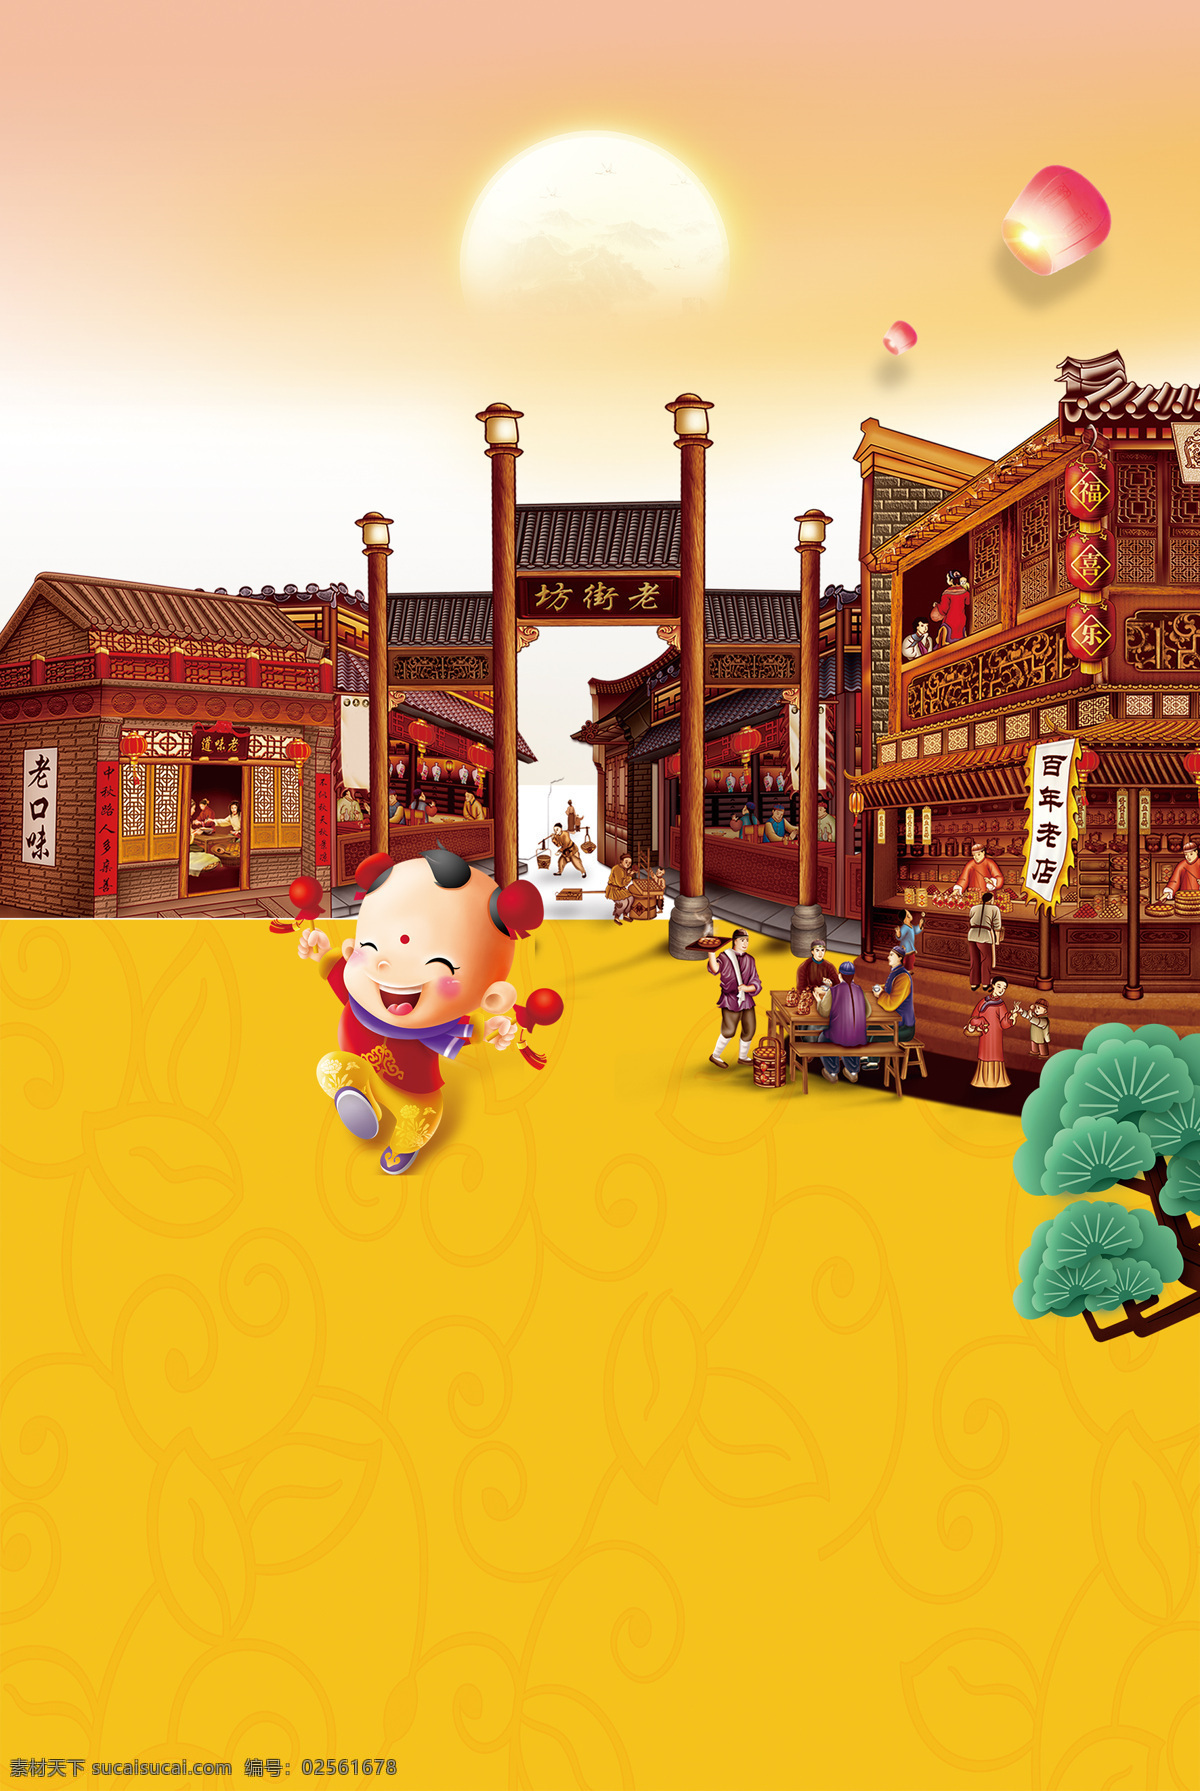 中式 复古 新年 背景 城门 儿童 房子 古典 古风 卡通 可爱 孔明灯 手绘 松柏 玩耍 月亮